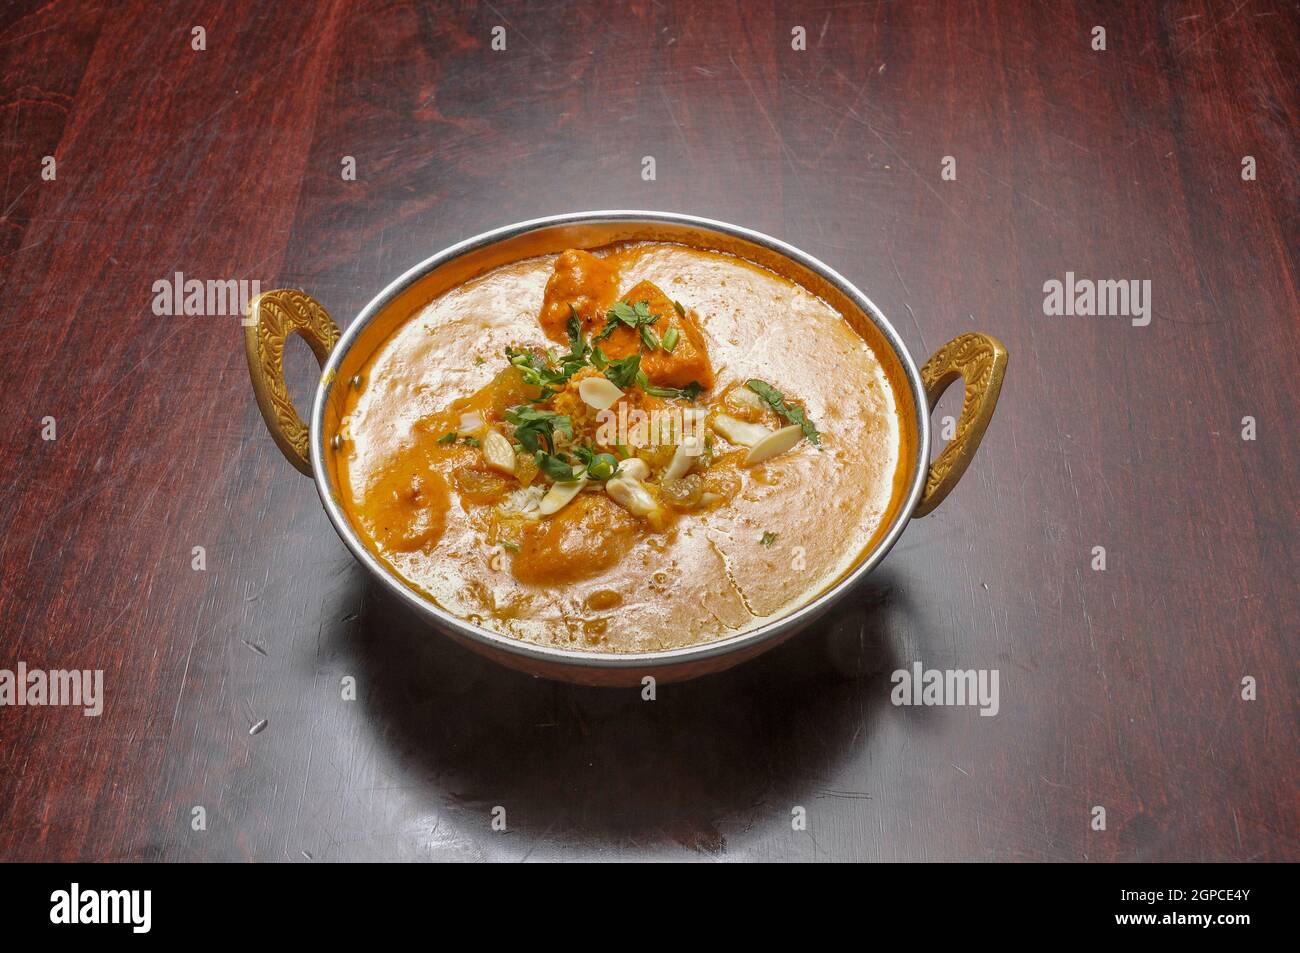 Authentische und traditionelle indische Küche Gericht bekannt als Korma Stockfoto